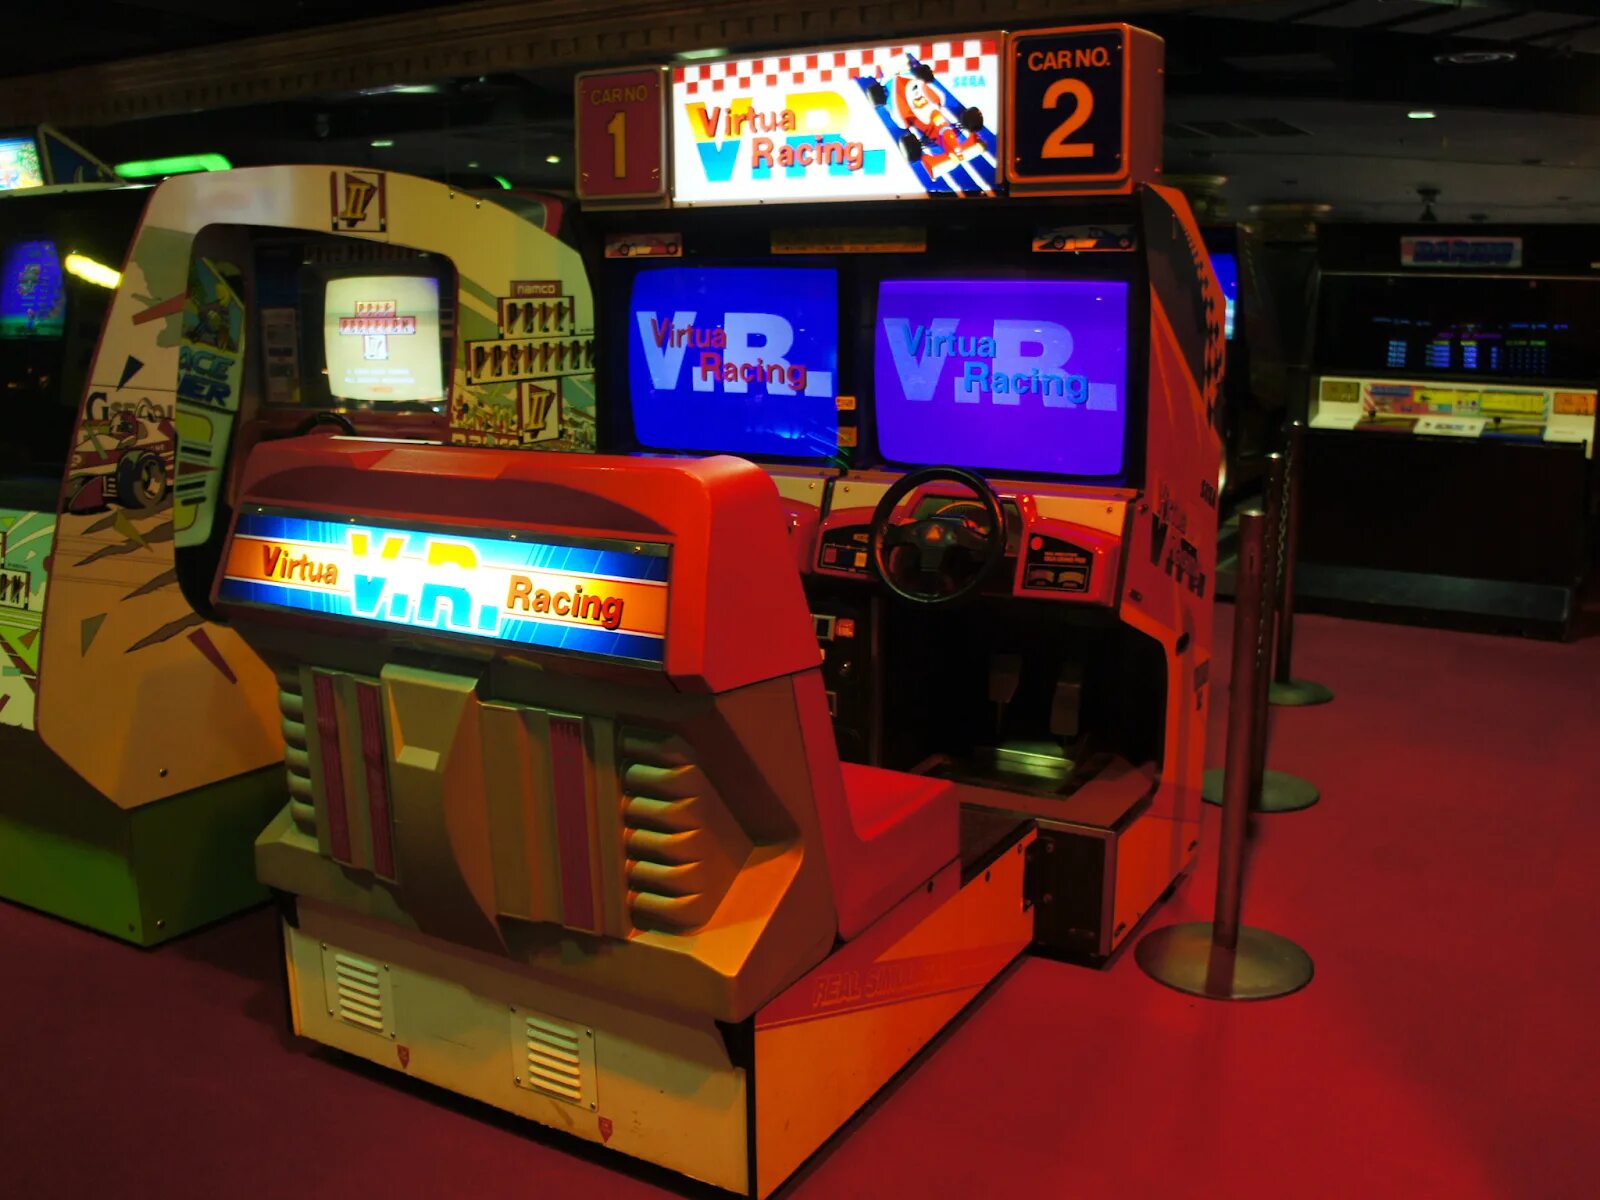 Драйв автоматы. Игровой автомат "Sega Rally 2". Игровой аппарат Sega Virtua cop. Ridge Racer аркадный автомат. Игровой автомат Форд рейсинг.